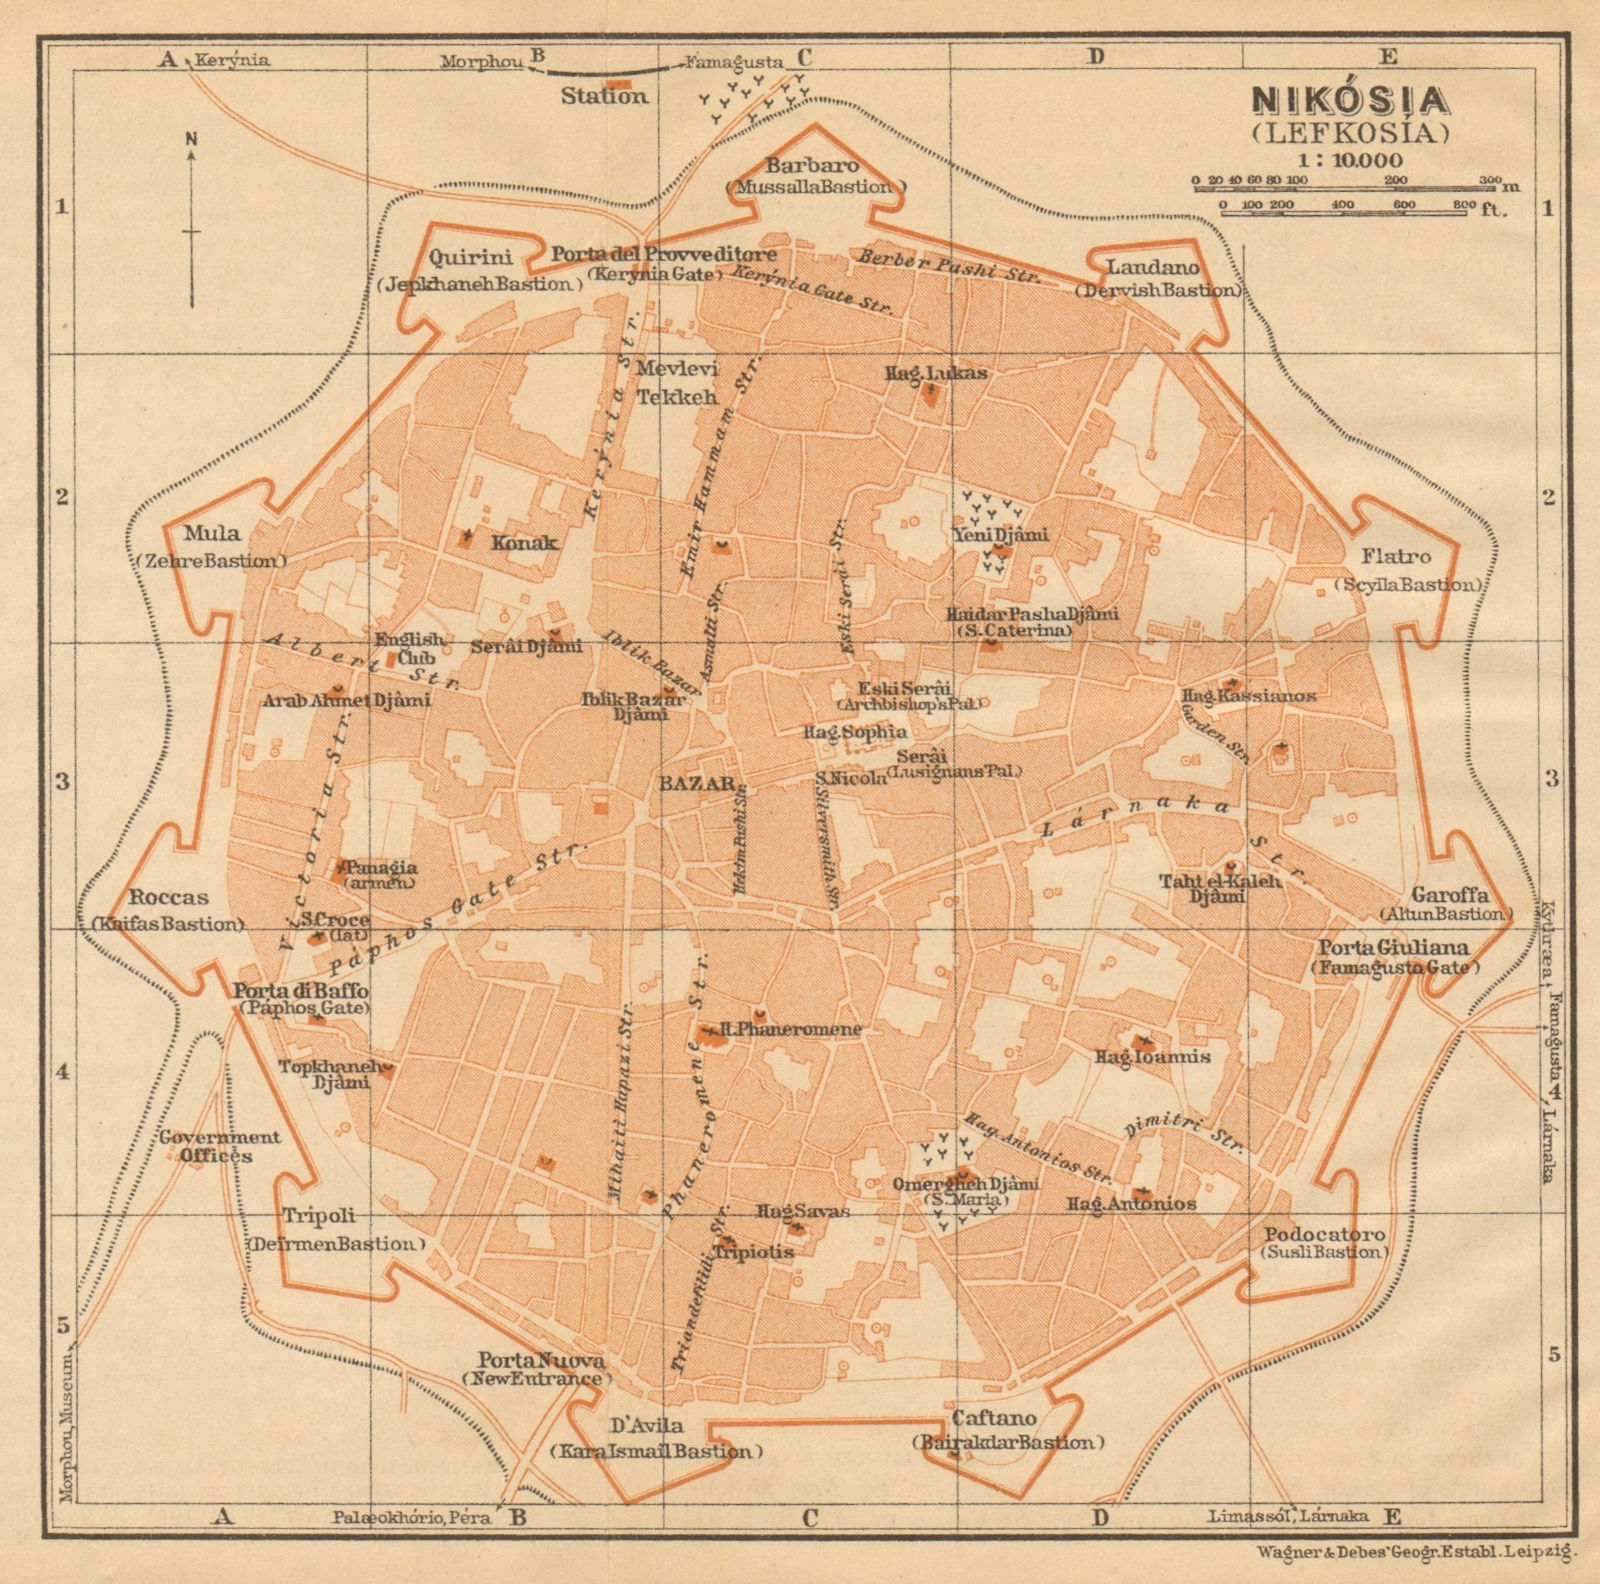 Nicosia antique town city plan. Nikosia. Lefkosia. Cyprus 1912 old map